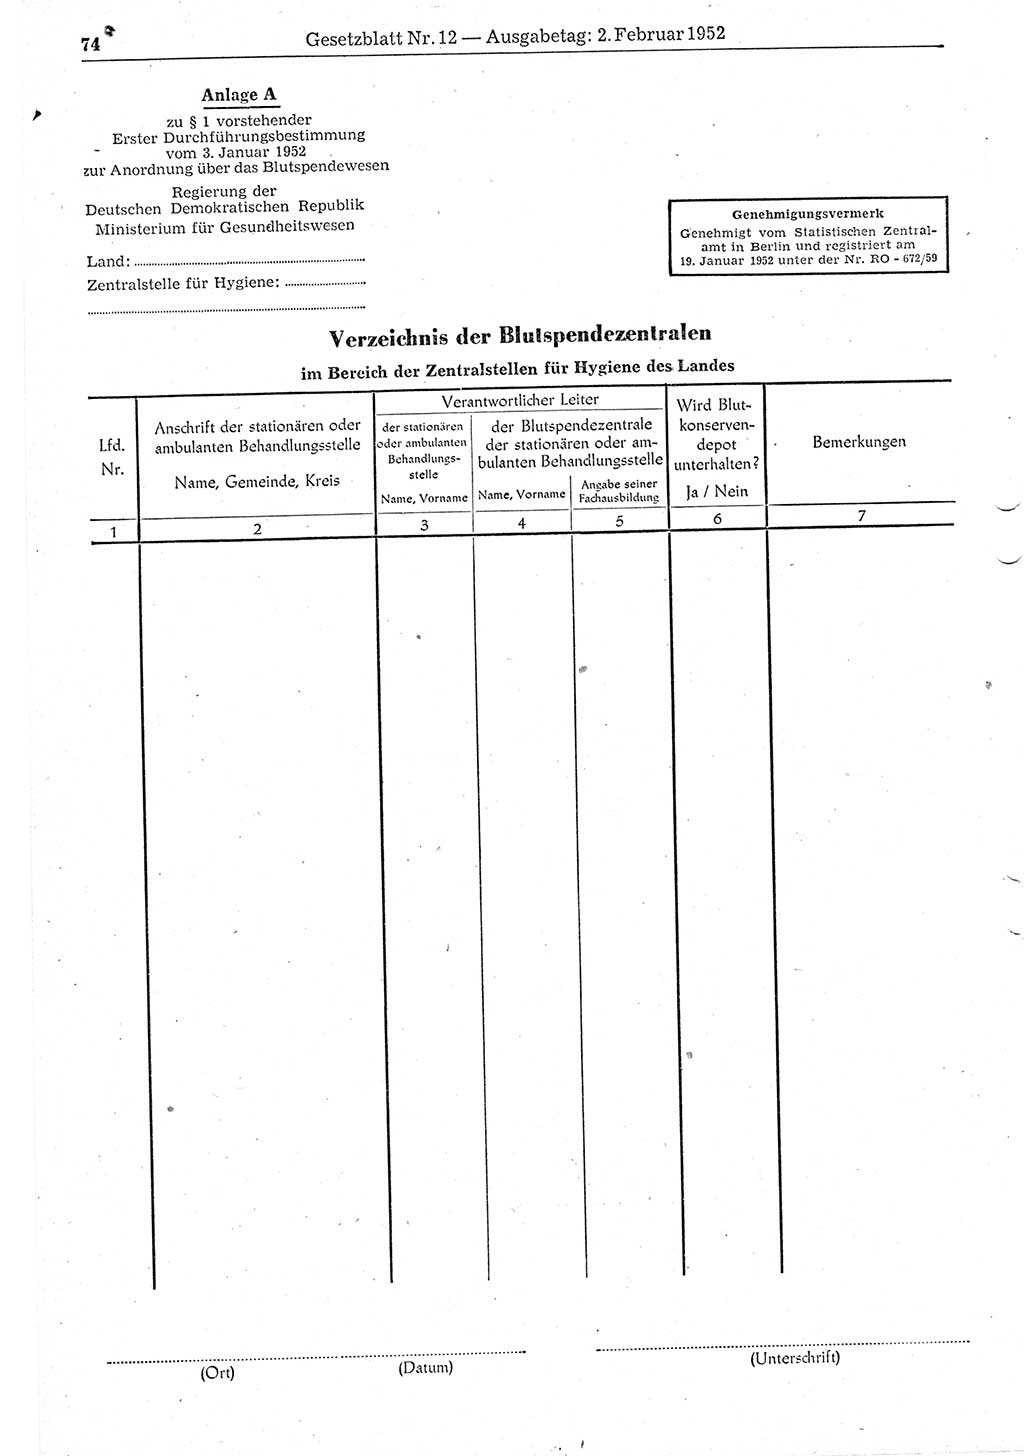 Gesetzblatt (GBl.) der Deutschen Demokratischen Republik (DDR) 1952, Seite 74 (GBl. DDR 1952, S. 74)